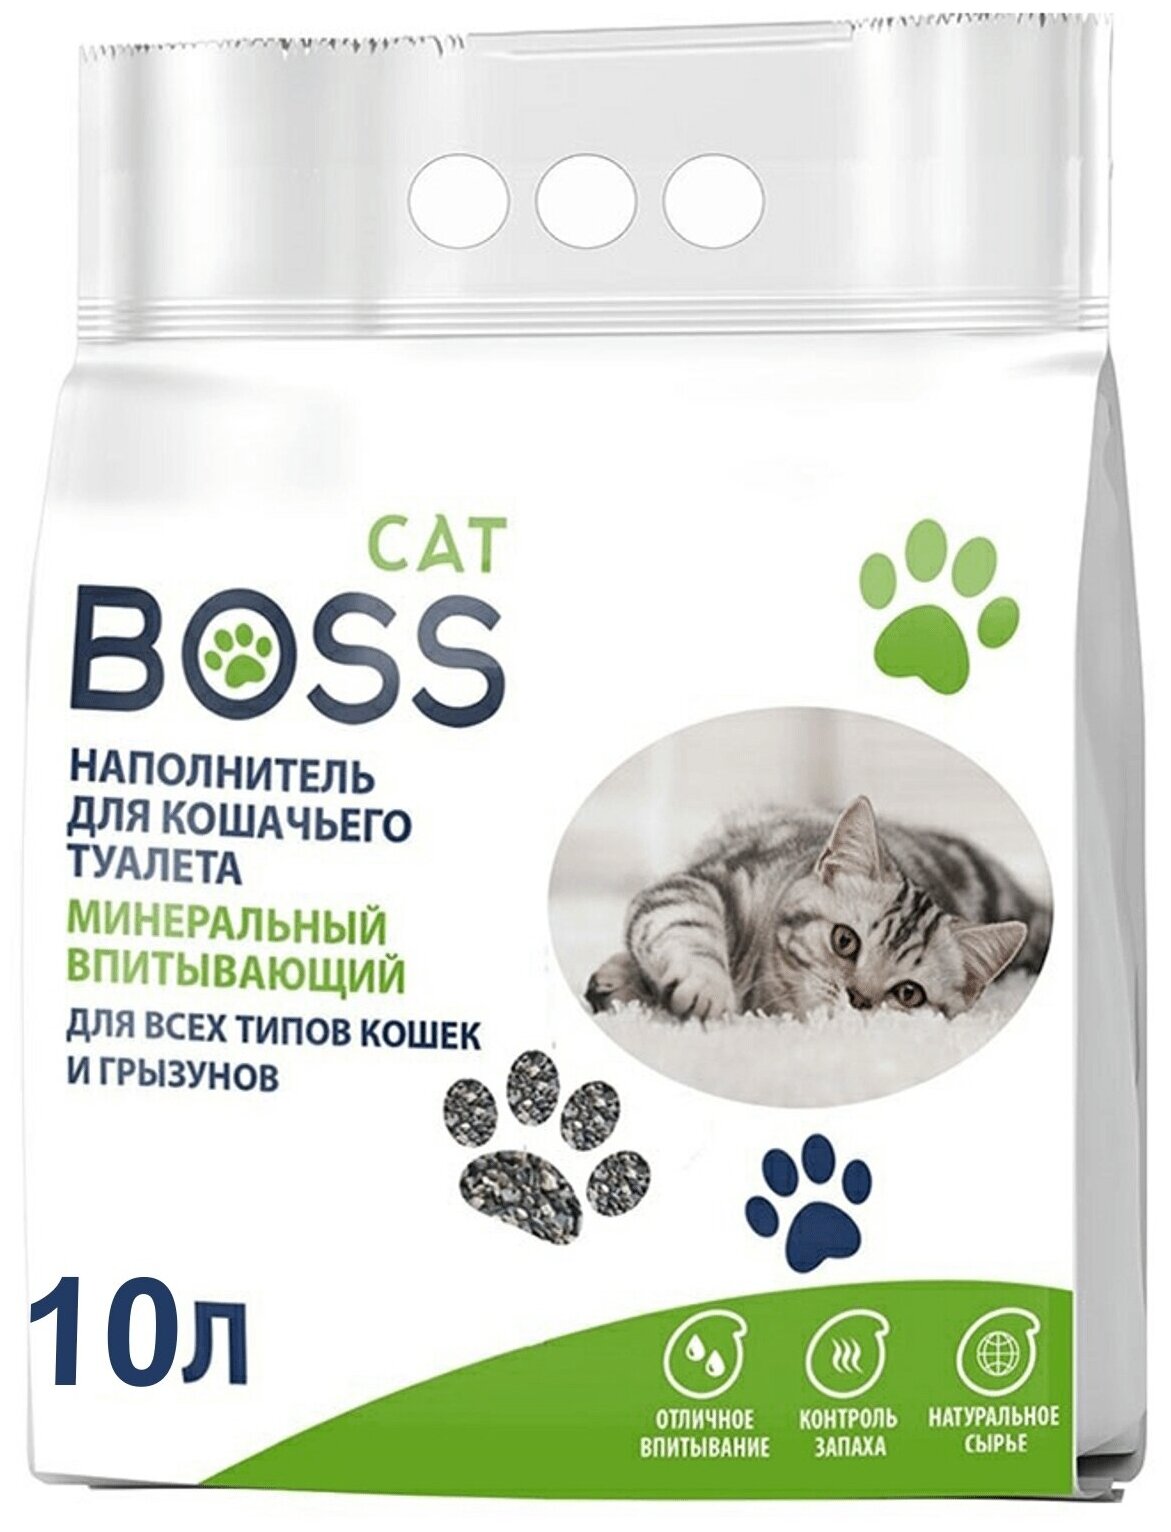 Кошачий наполнитель Cat Boss минеральный впитывающий, на 10 литров влаги